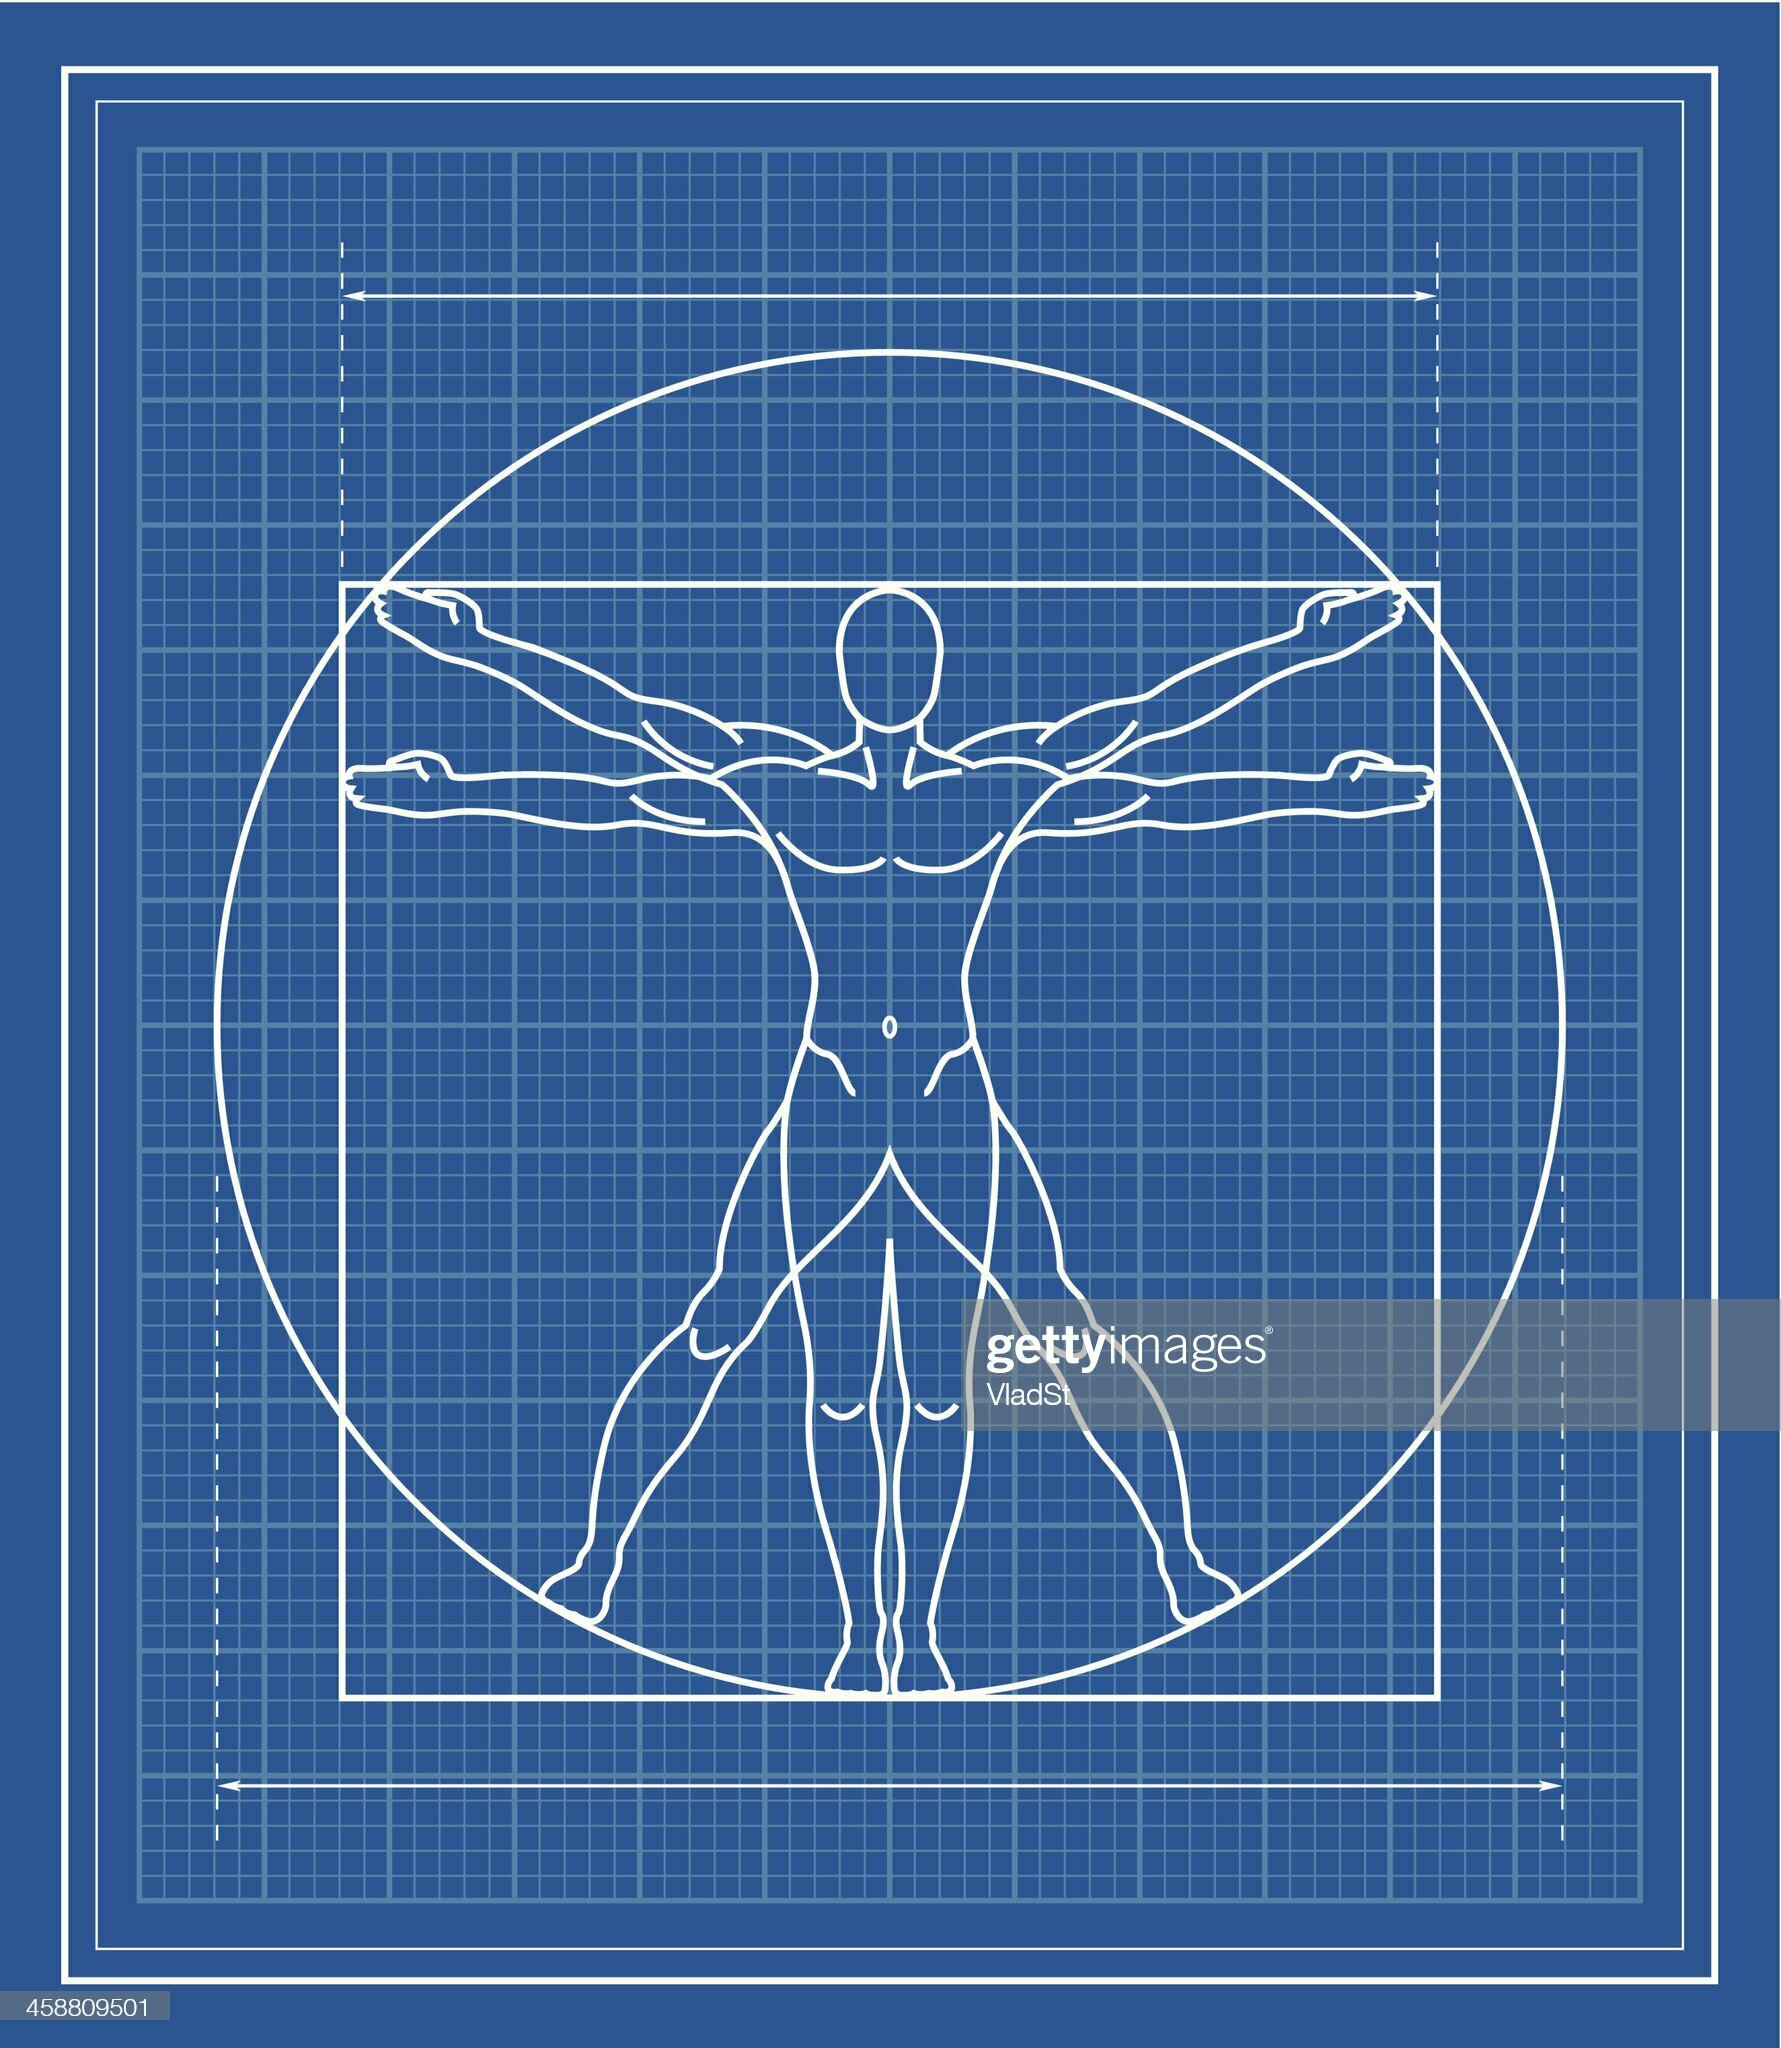 图1.22：列奥纳多·达·芬奇（Leonardo da Vinci）绘制于1485年左右的《维特鲁威人》（Vitruvian Man）体现了一种信念，即人的比例是神圣的比例。这些信念促使文艺复兴时期的建筑师追求与人体比例相适应的几何形状。